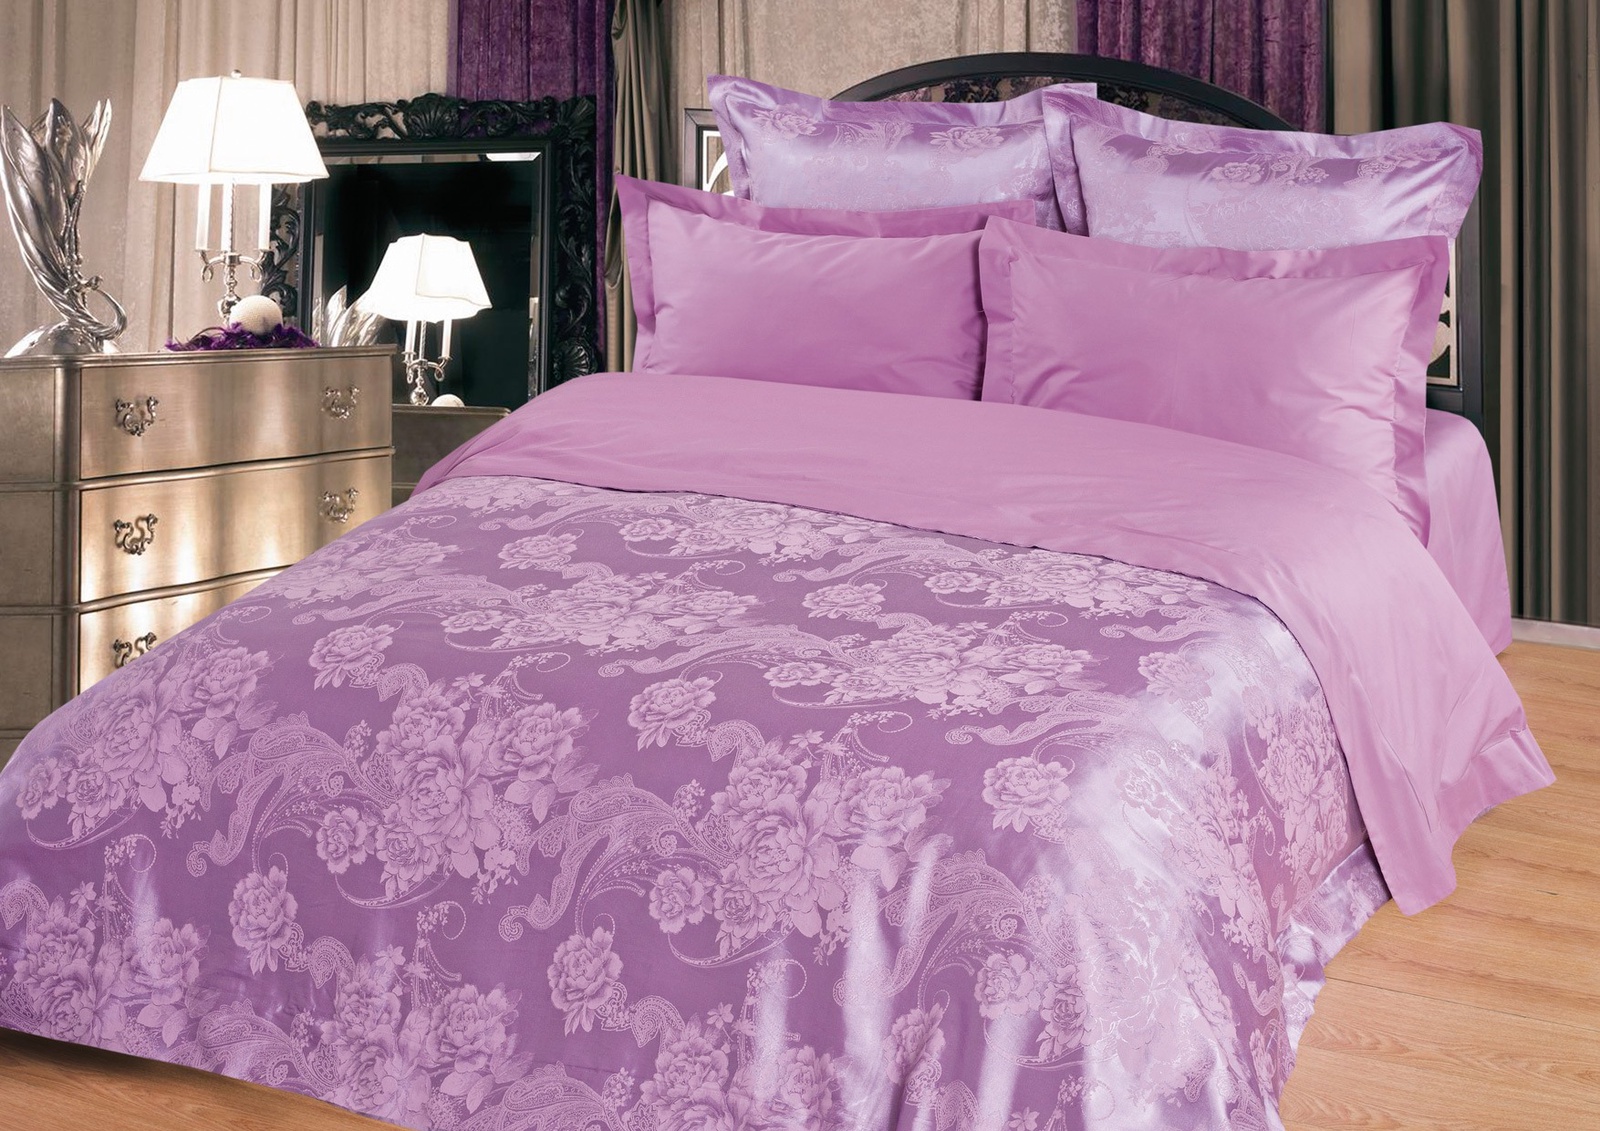 фото Комплект постельного белья BegAl КПБ сатин-жаккард, ЖКЭ003-107, фиолетовый